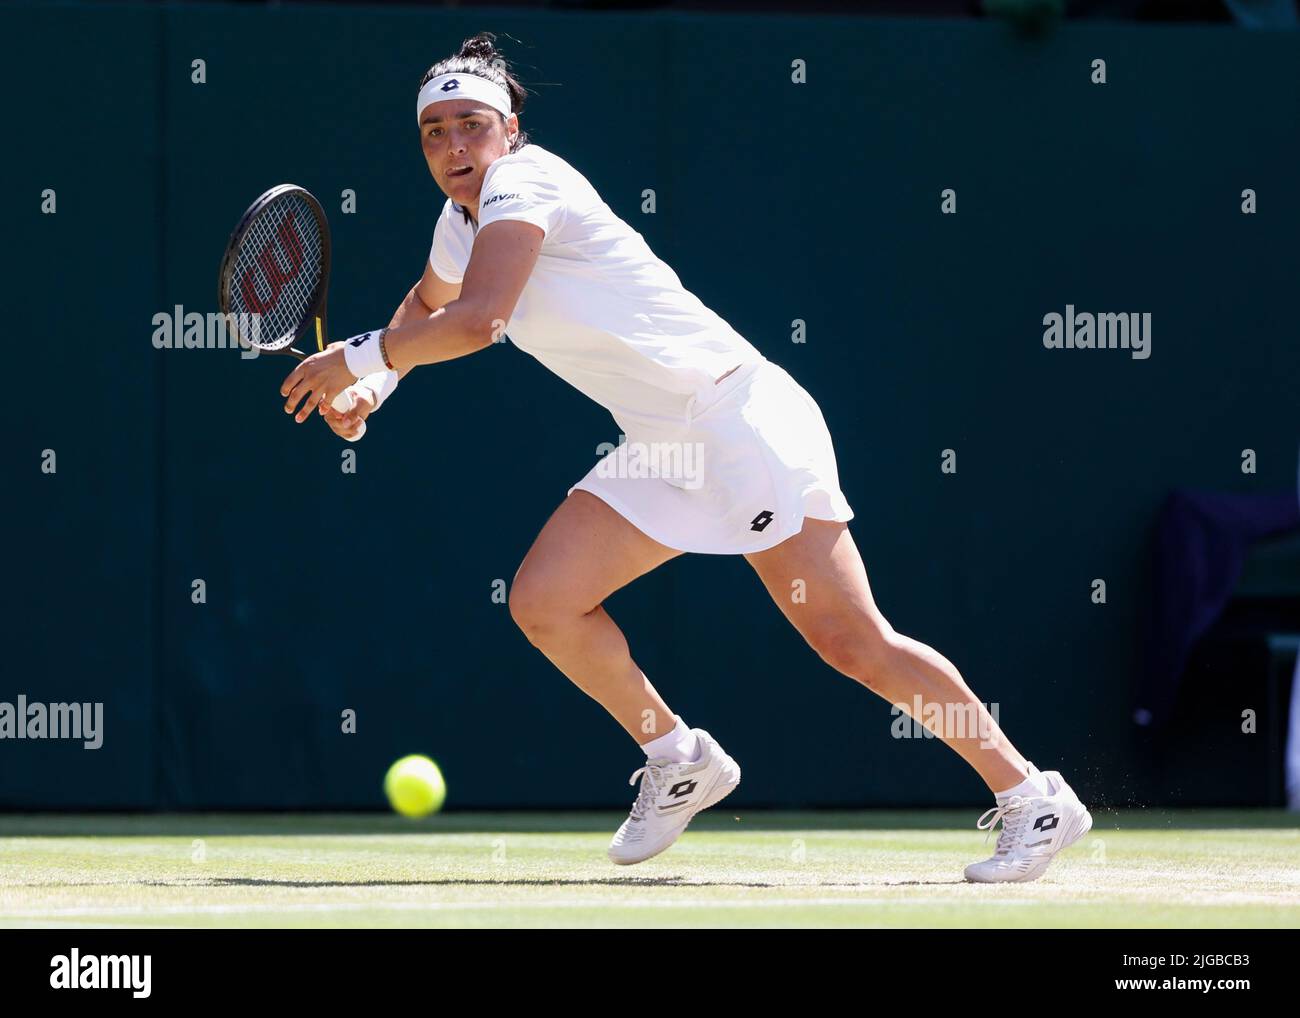 Wimbledon, Gran Bretaña 9th. Julio, 2022. El tenista tunecino Ons Jabeur en acción en el Campeonato de Wimbledon 2022 el sábado 09 de junio de 2022., © Juergen Hasenkopf / Alamy Live News Foto de stock